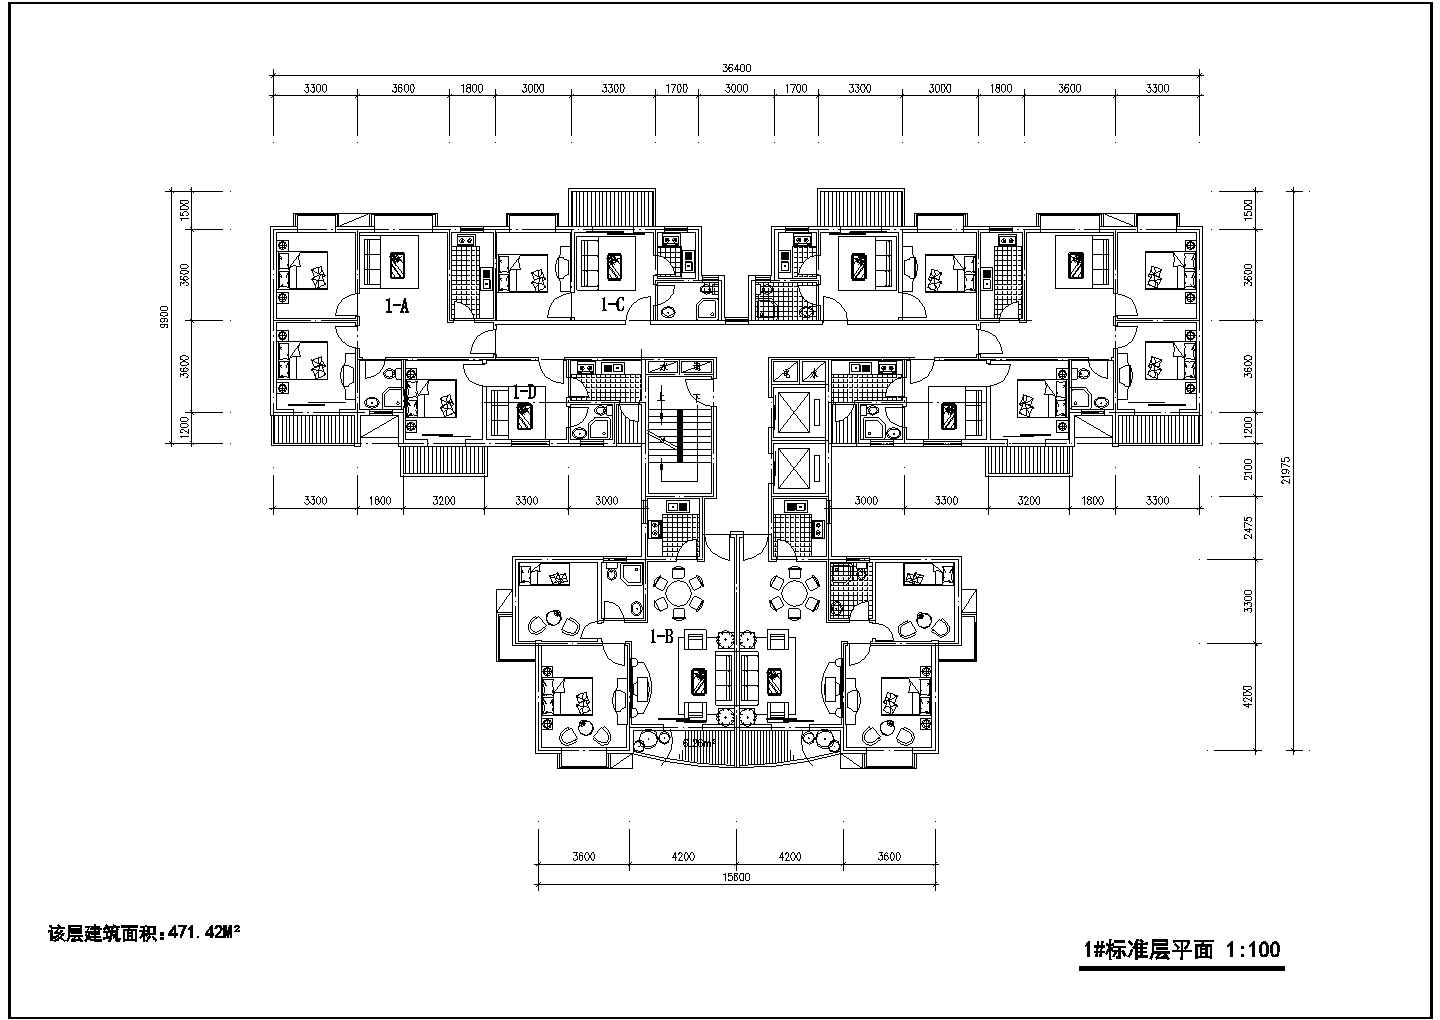 【苏州】某多层户型公寓楼全套施工平面图(含标准层平面图)